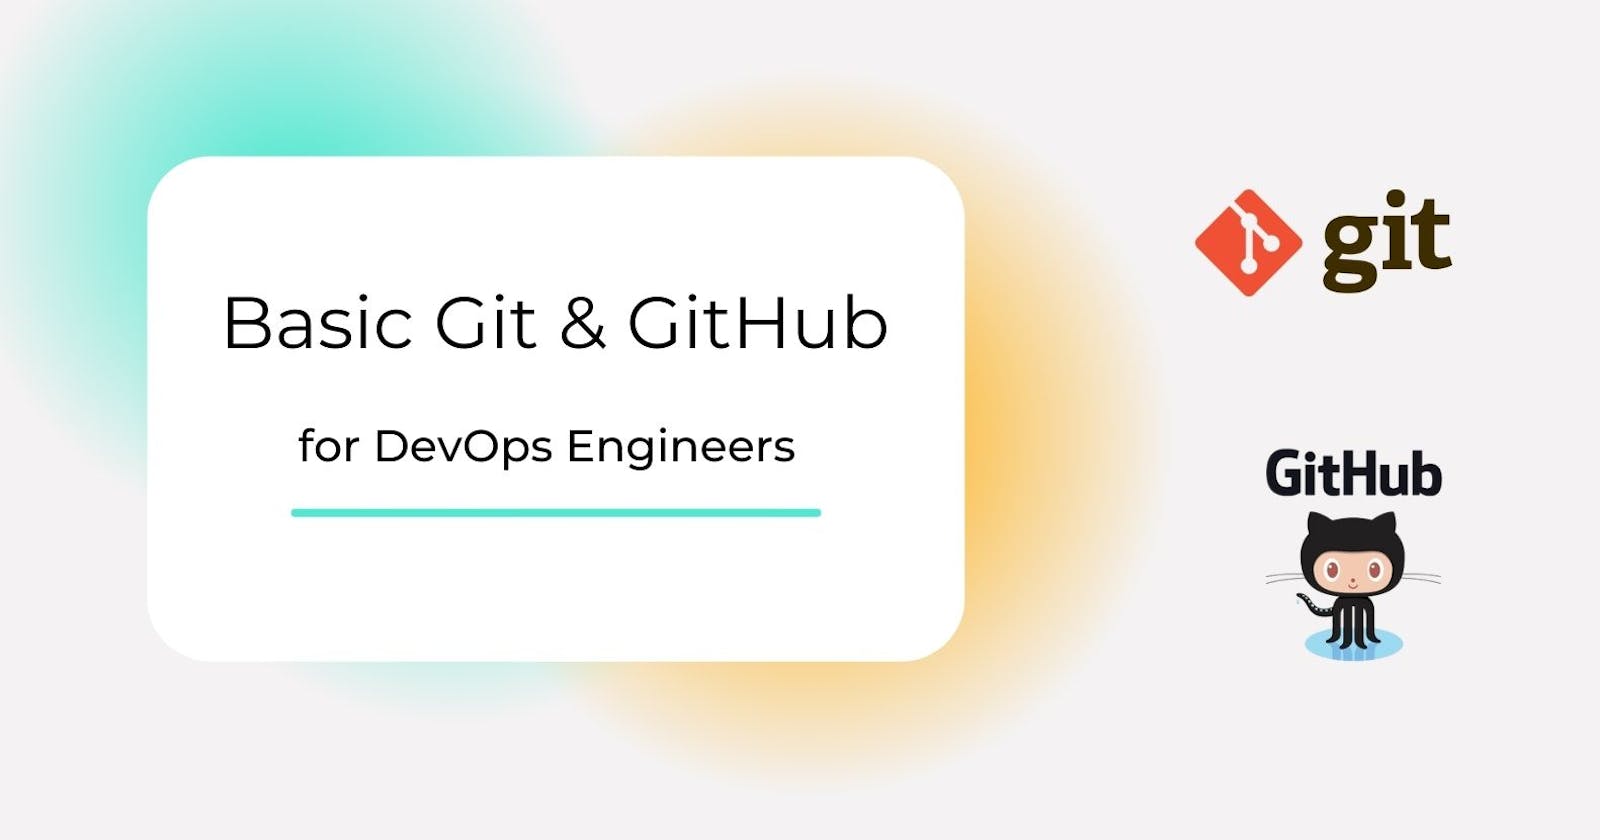 Day 8: Basic Git & GitHub for DevOps Engineers